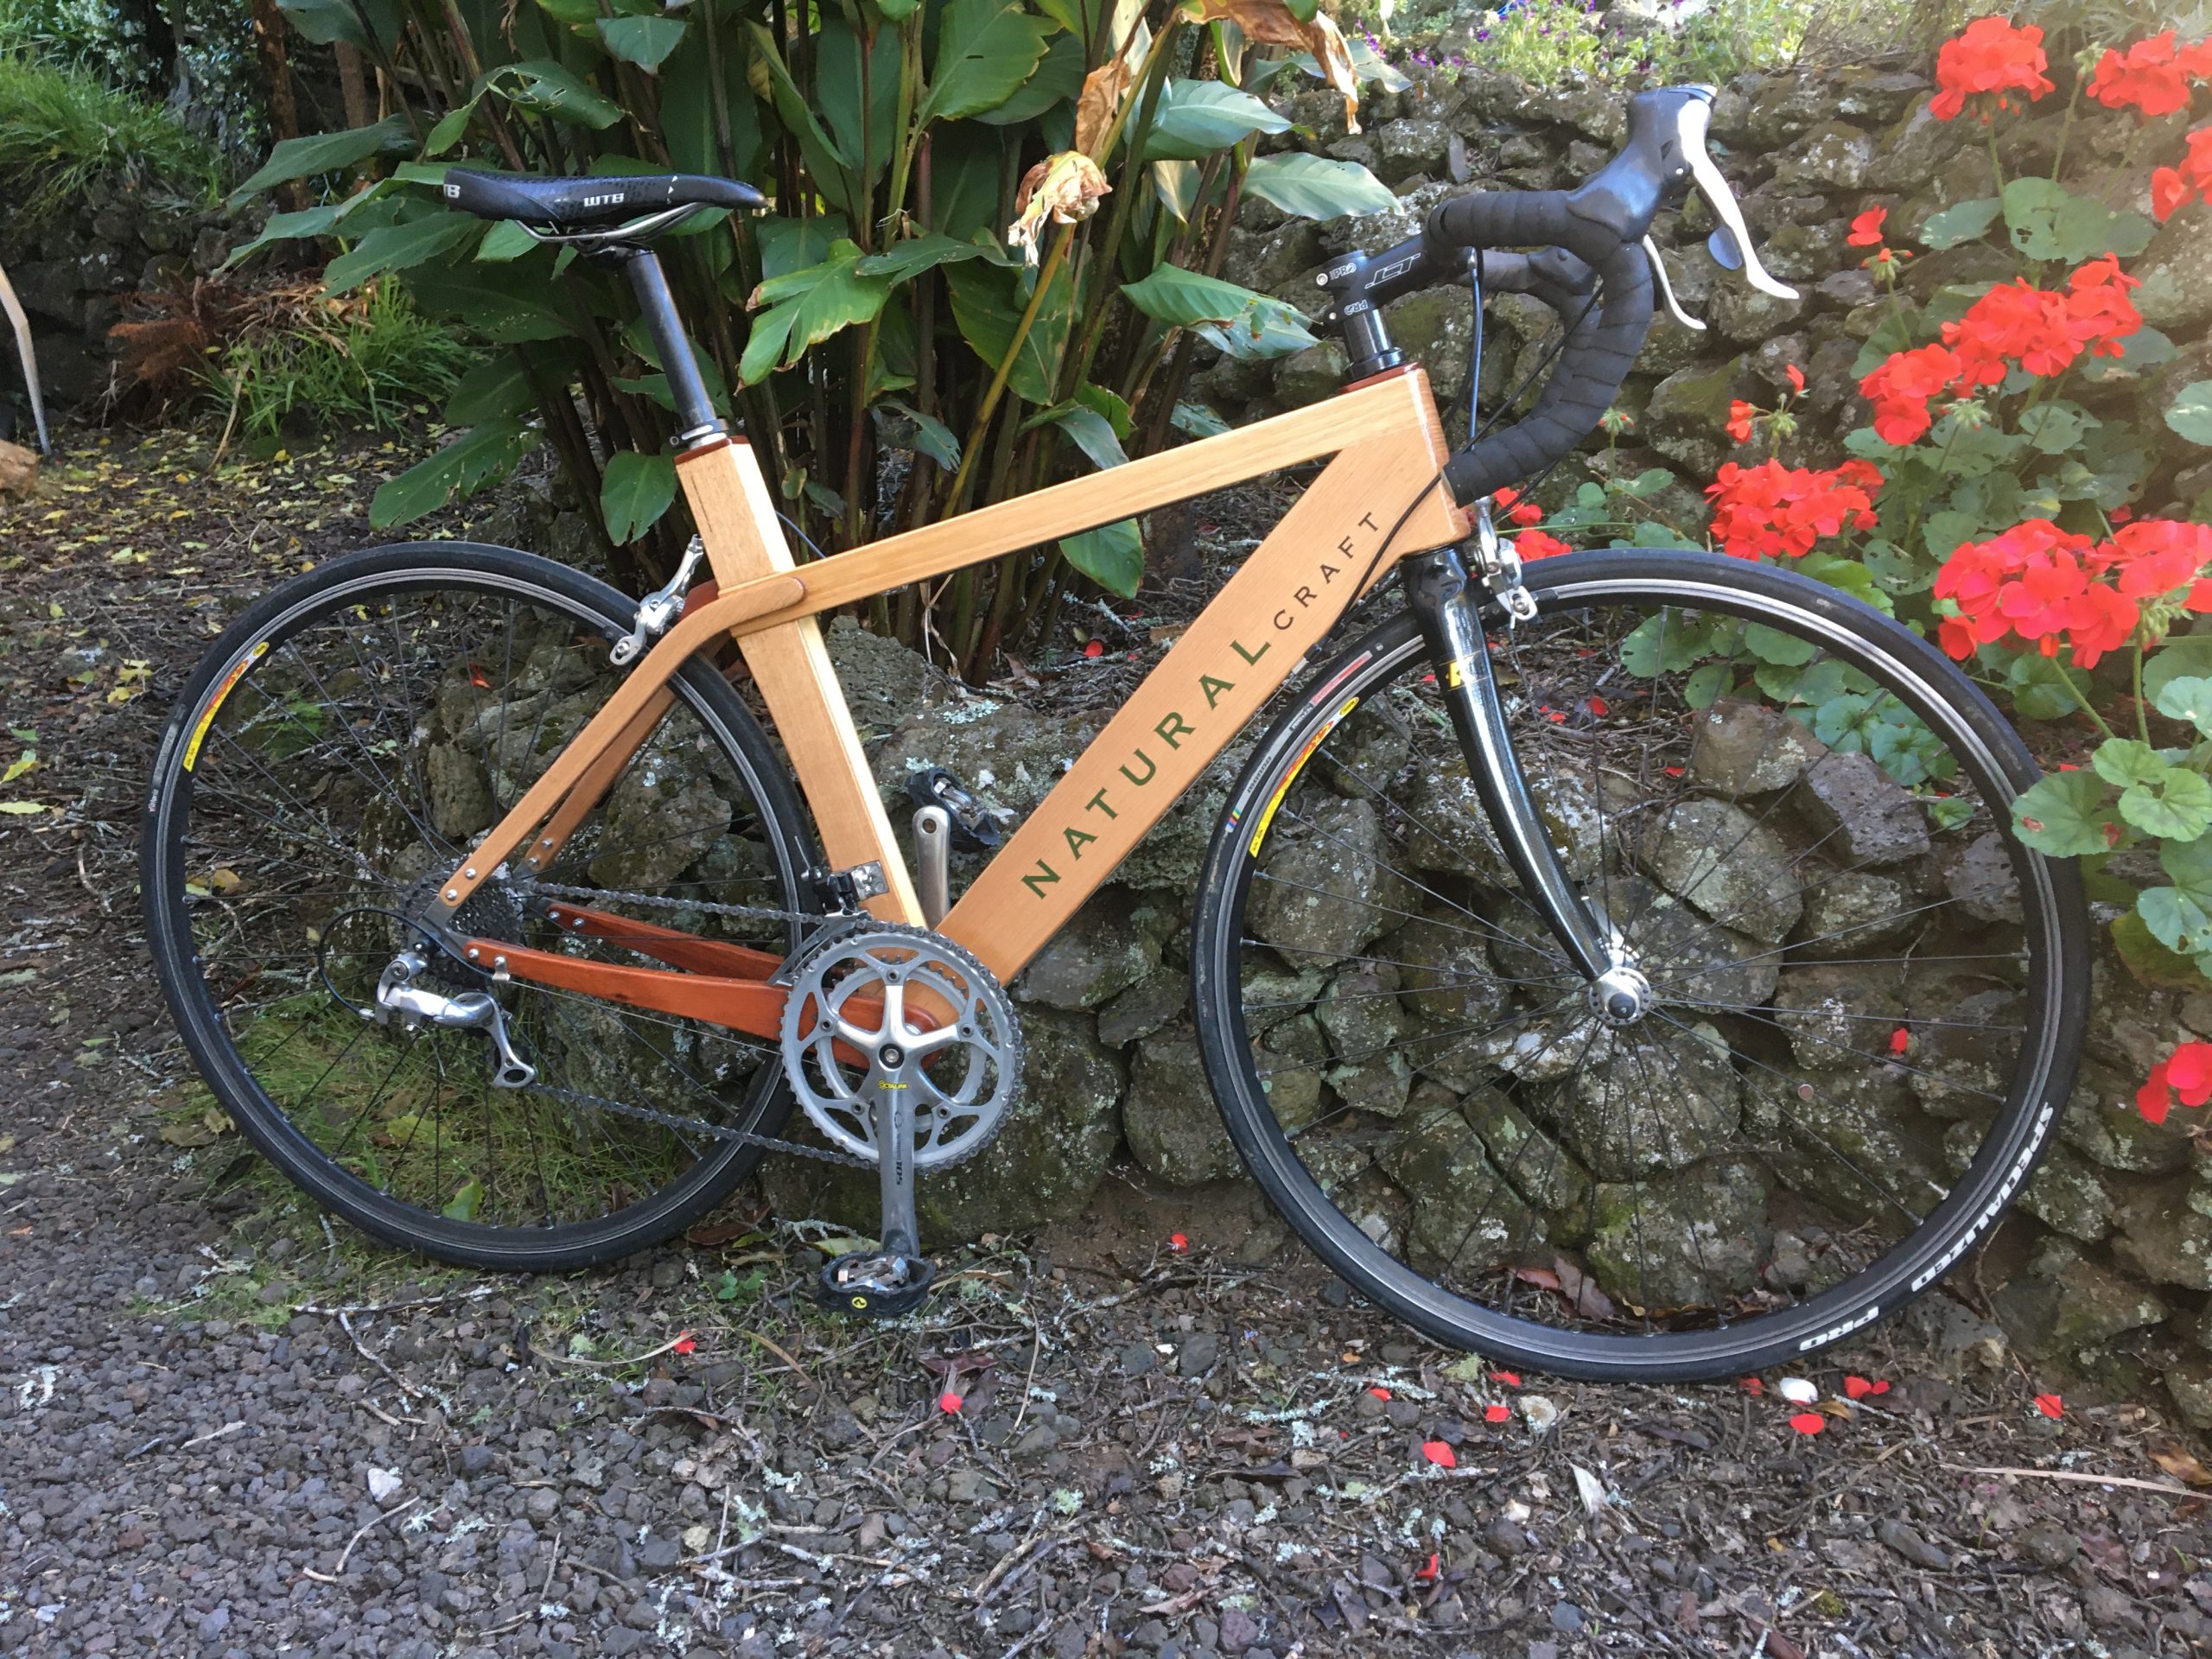 700km on a Wooden Bike